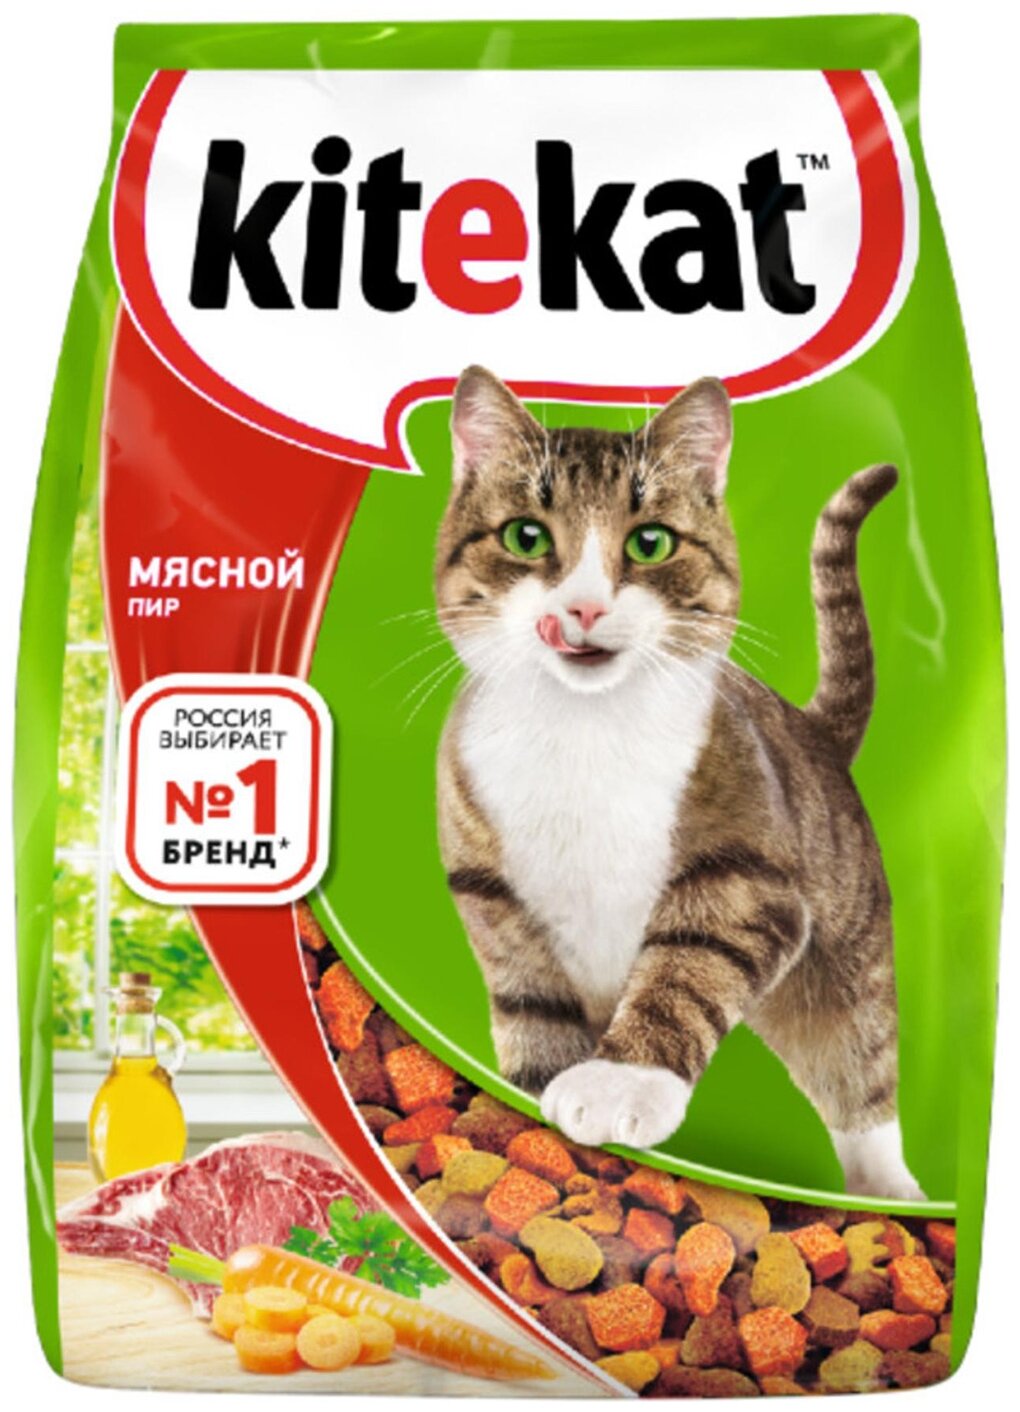 Сухой корм для кошек Kitekat Мясной Пир